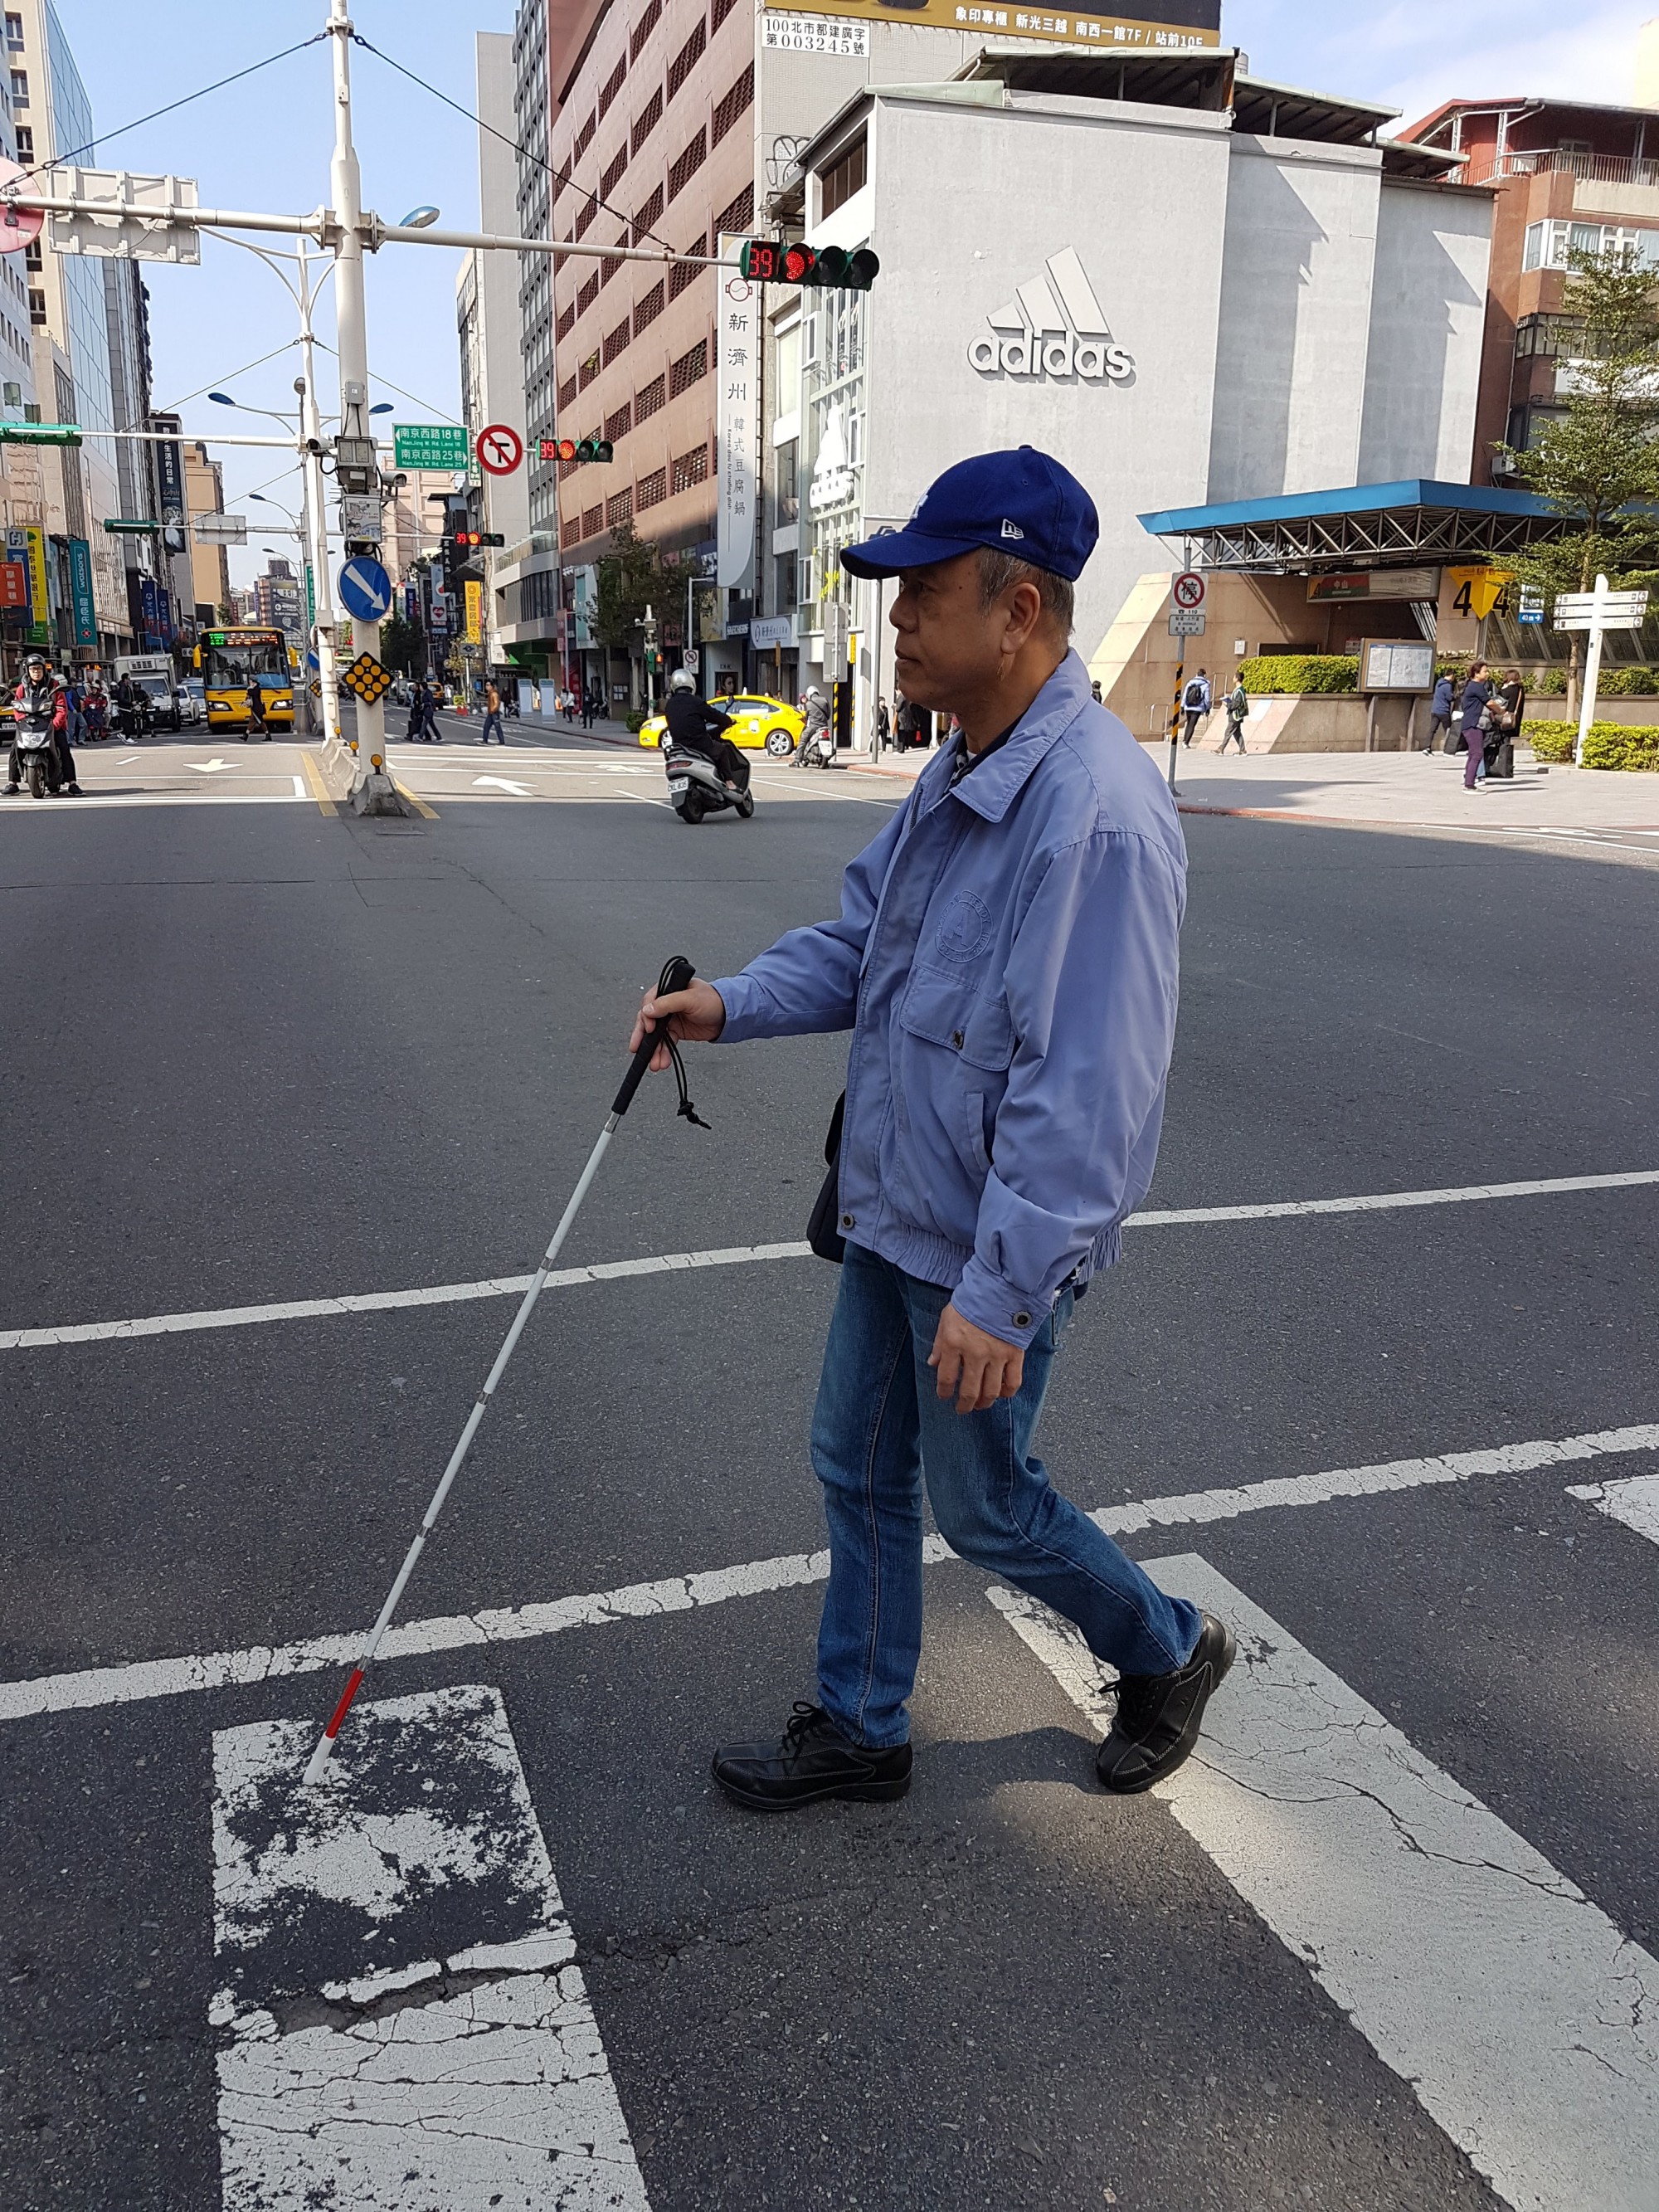 視障者手持白手杖行走於行人穿越道上